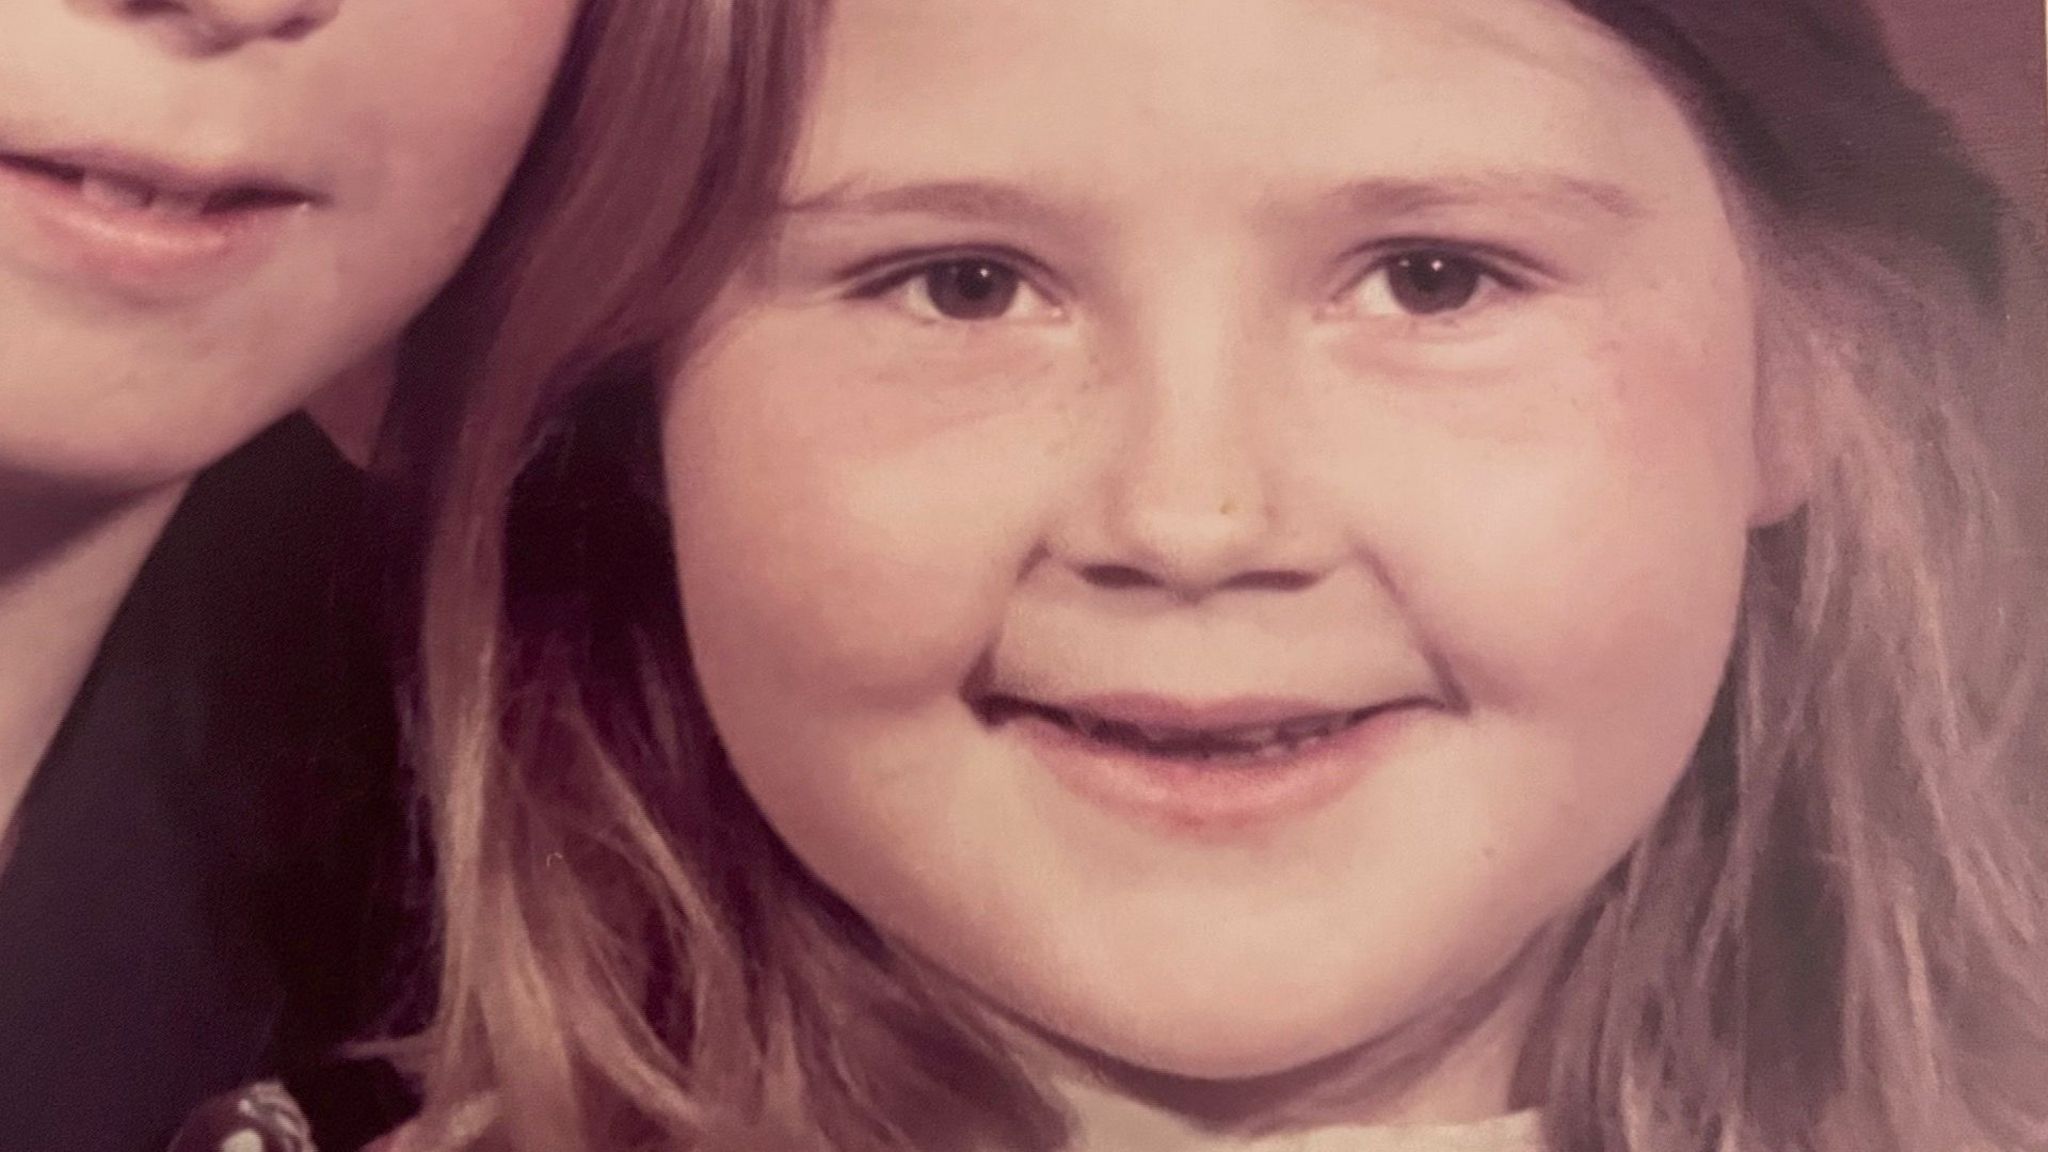 Photo of Nicola Jones as a child